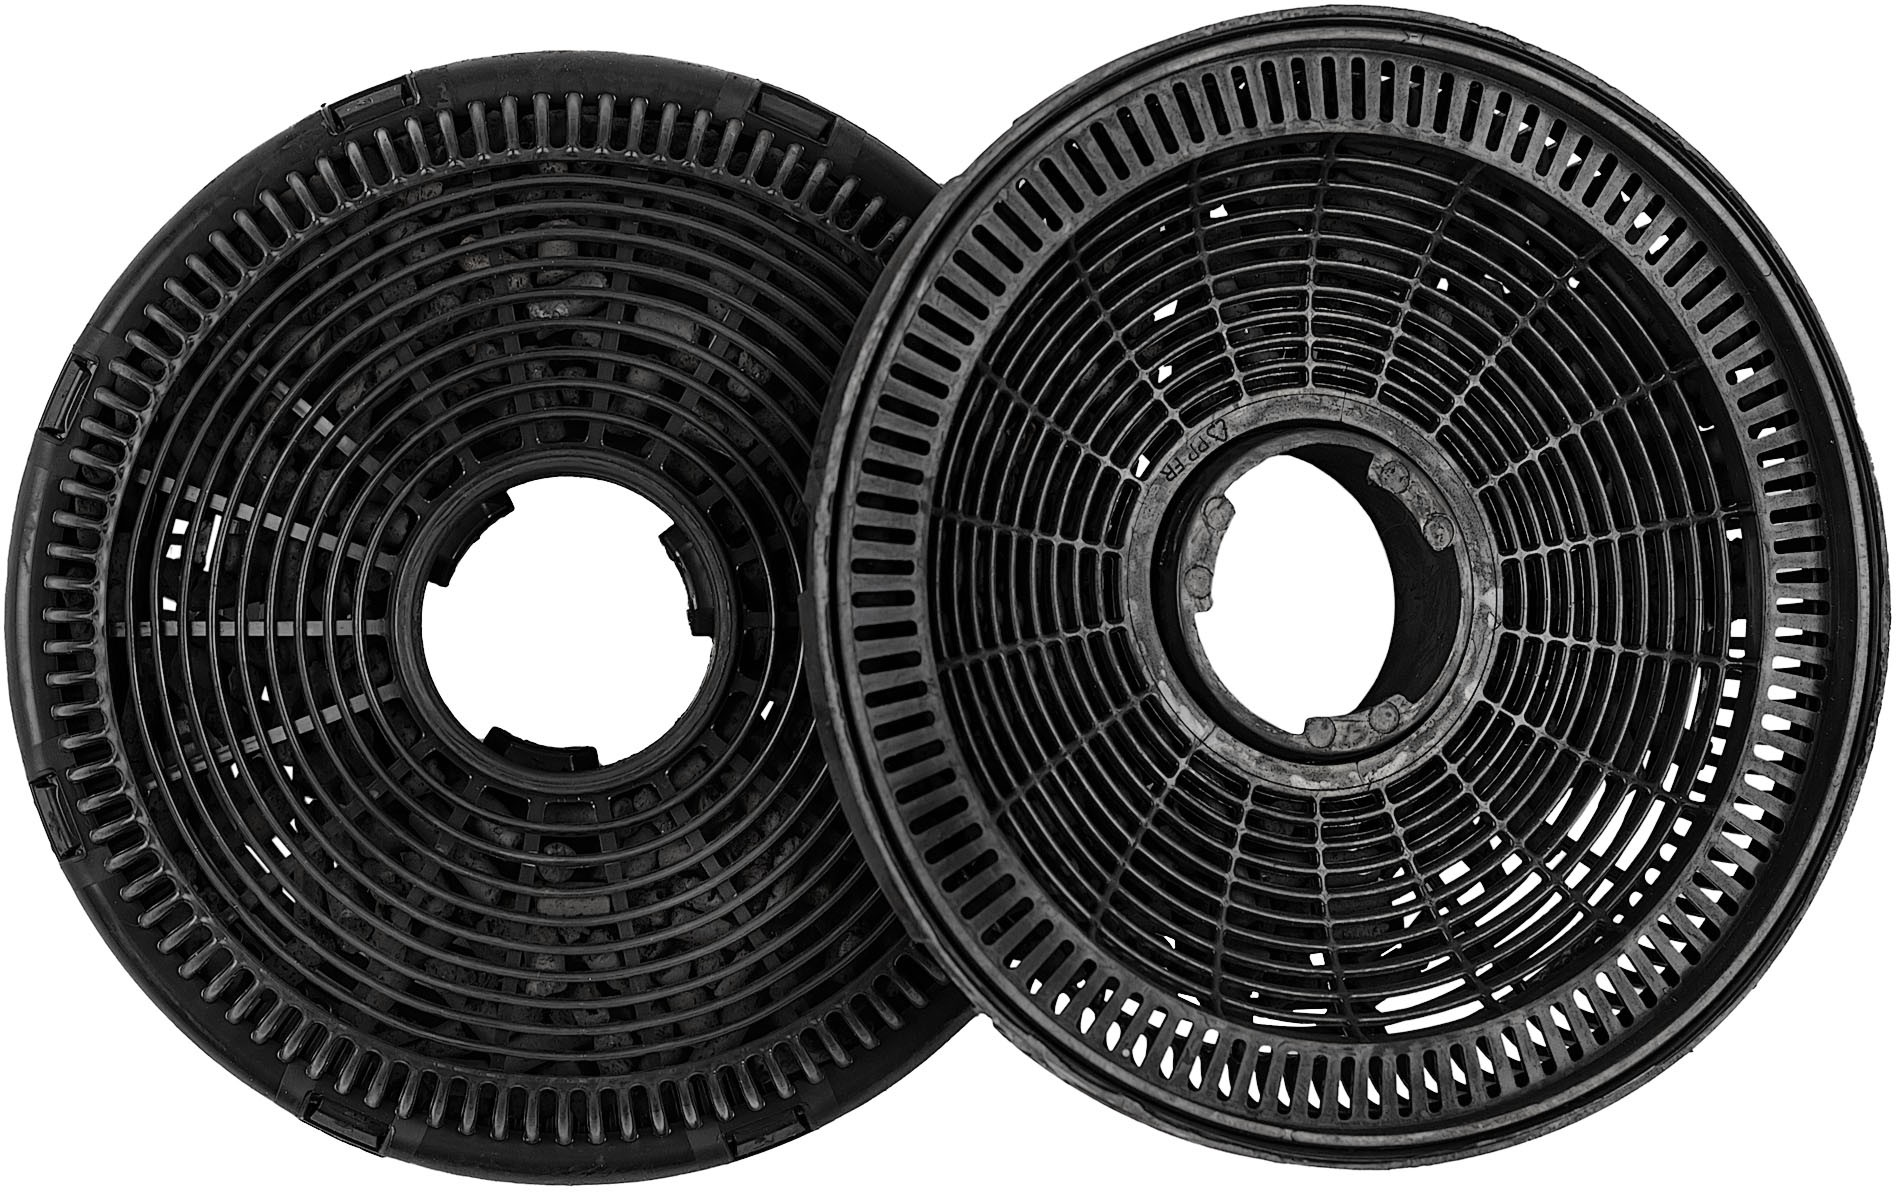 Угольный фильтр для вытяжки Krona / Крона CFR-1 размер 13.8х3.4см диаметр встраивания 130мм / для кухонных вытяжек